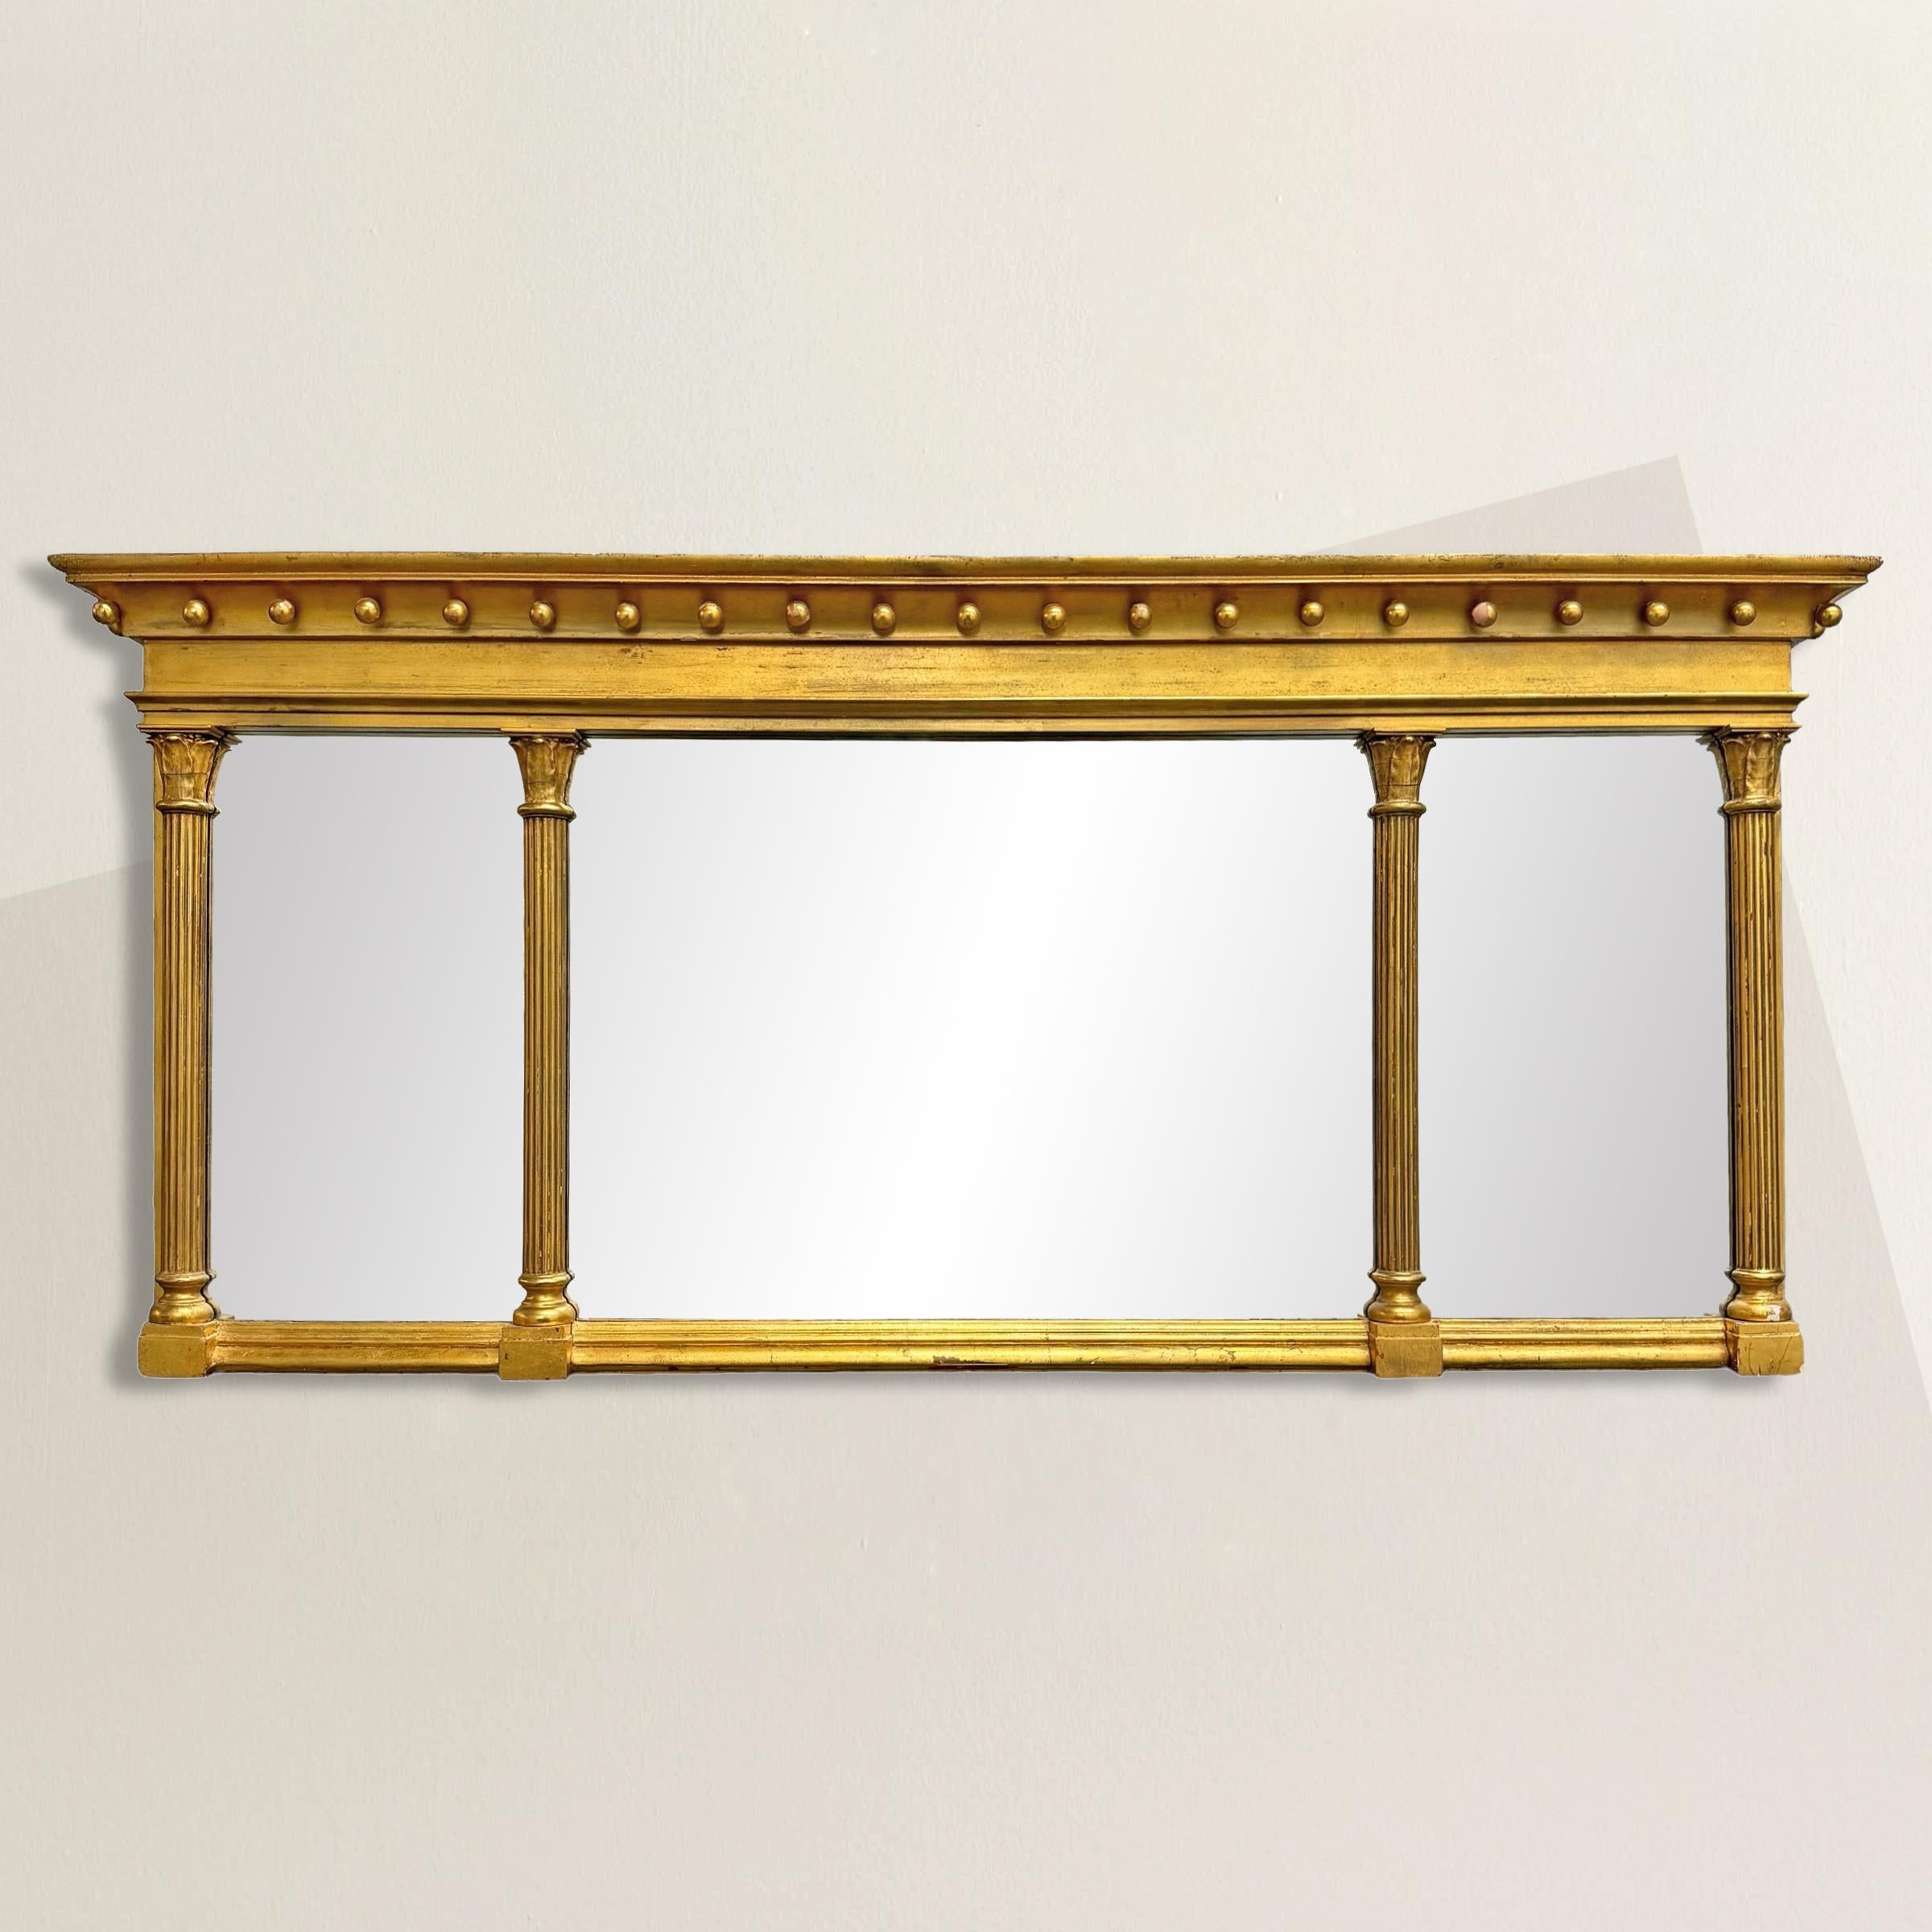 Dieser Spiegel aus vergoldetem Holz im amerikanischen Federal-Stil des 19. Jahrhunderts ist ein Paradebeispiel für die Eleganz und Symmetrie, die die Ästhetik des Federal-Designs ausmachen. Der mit stilisierten korinthischen Säulen geschmückte